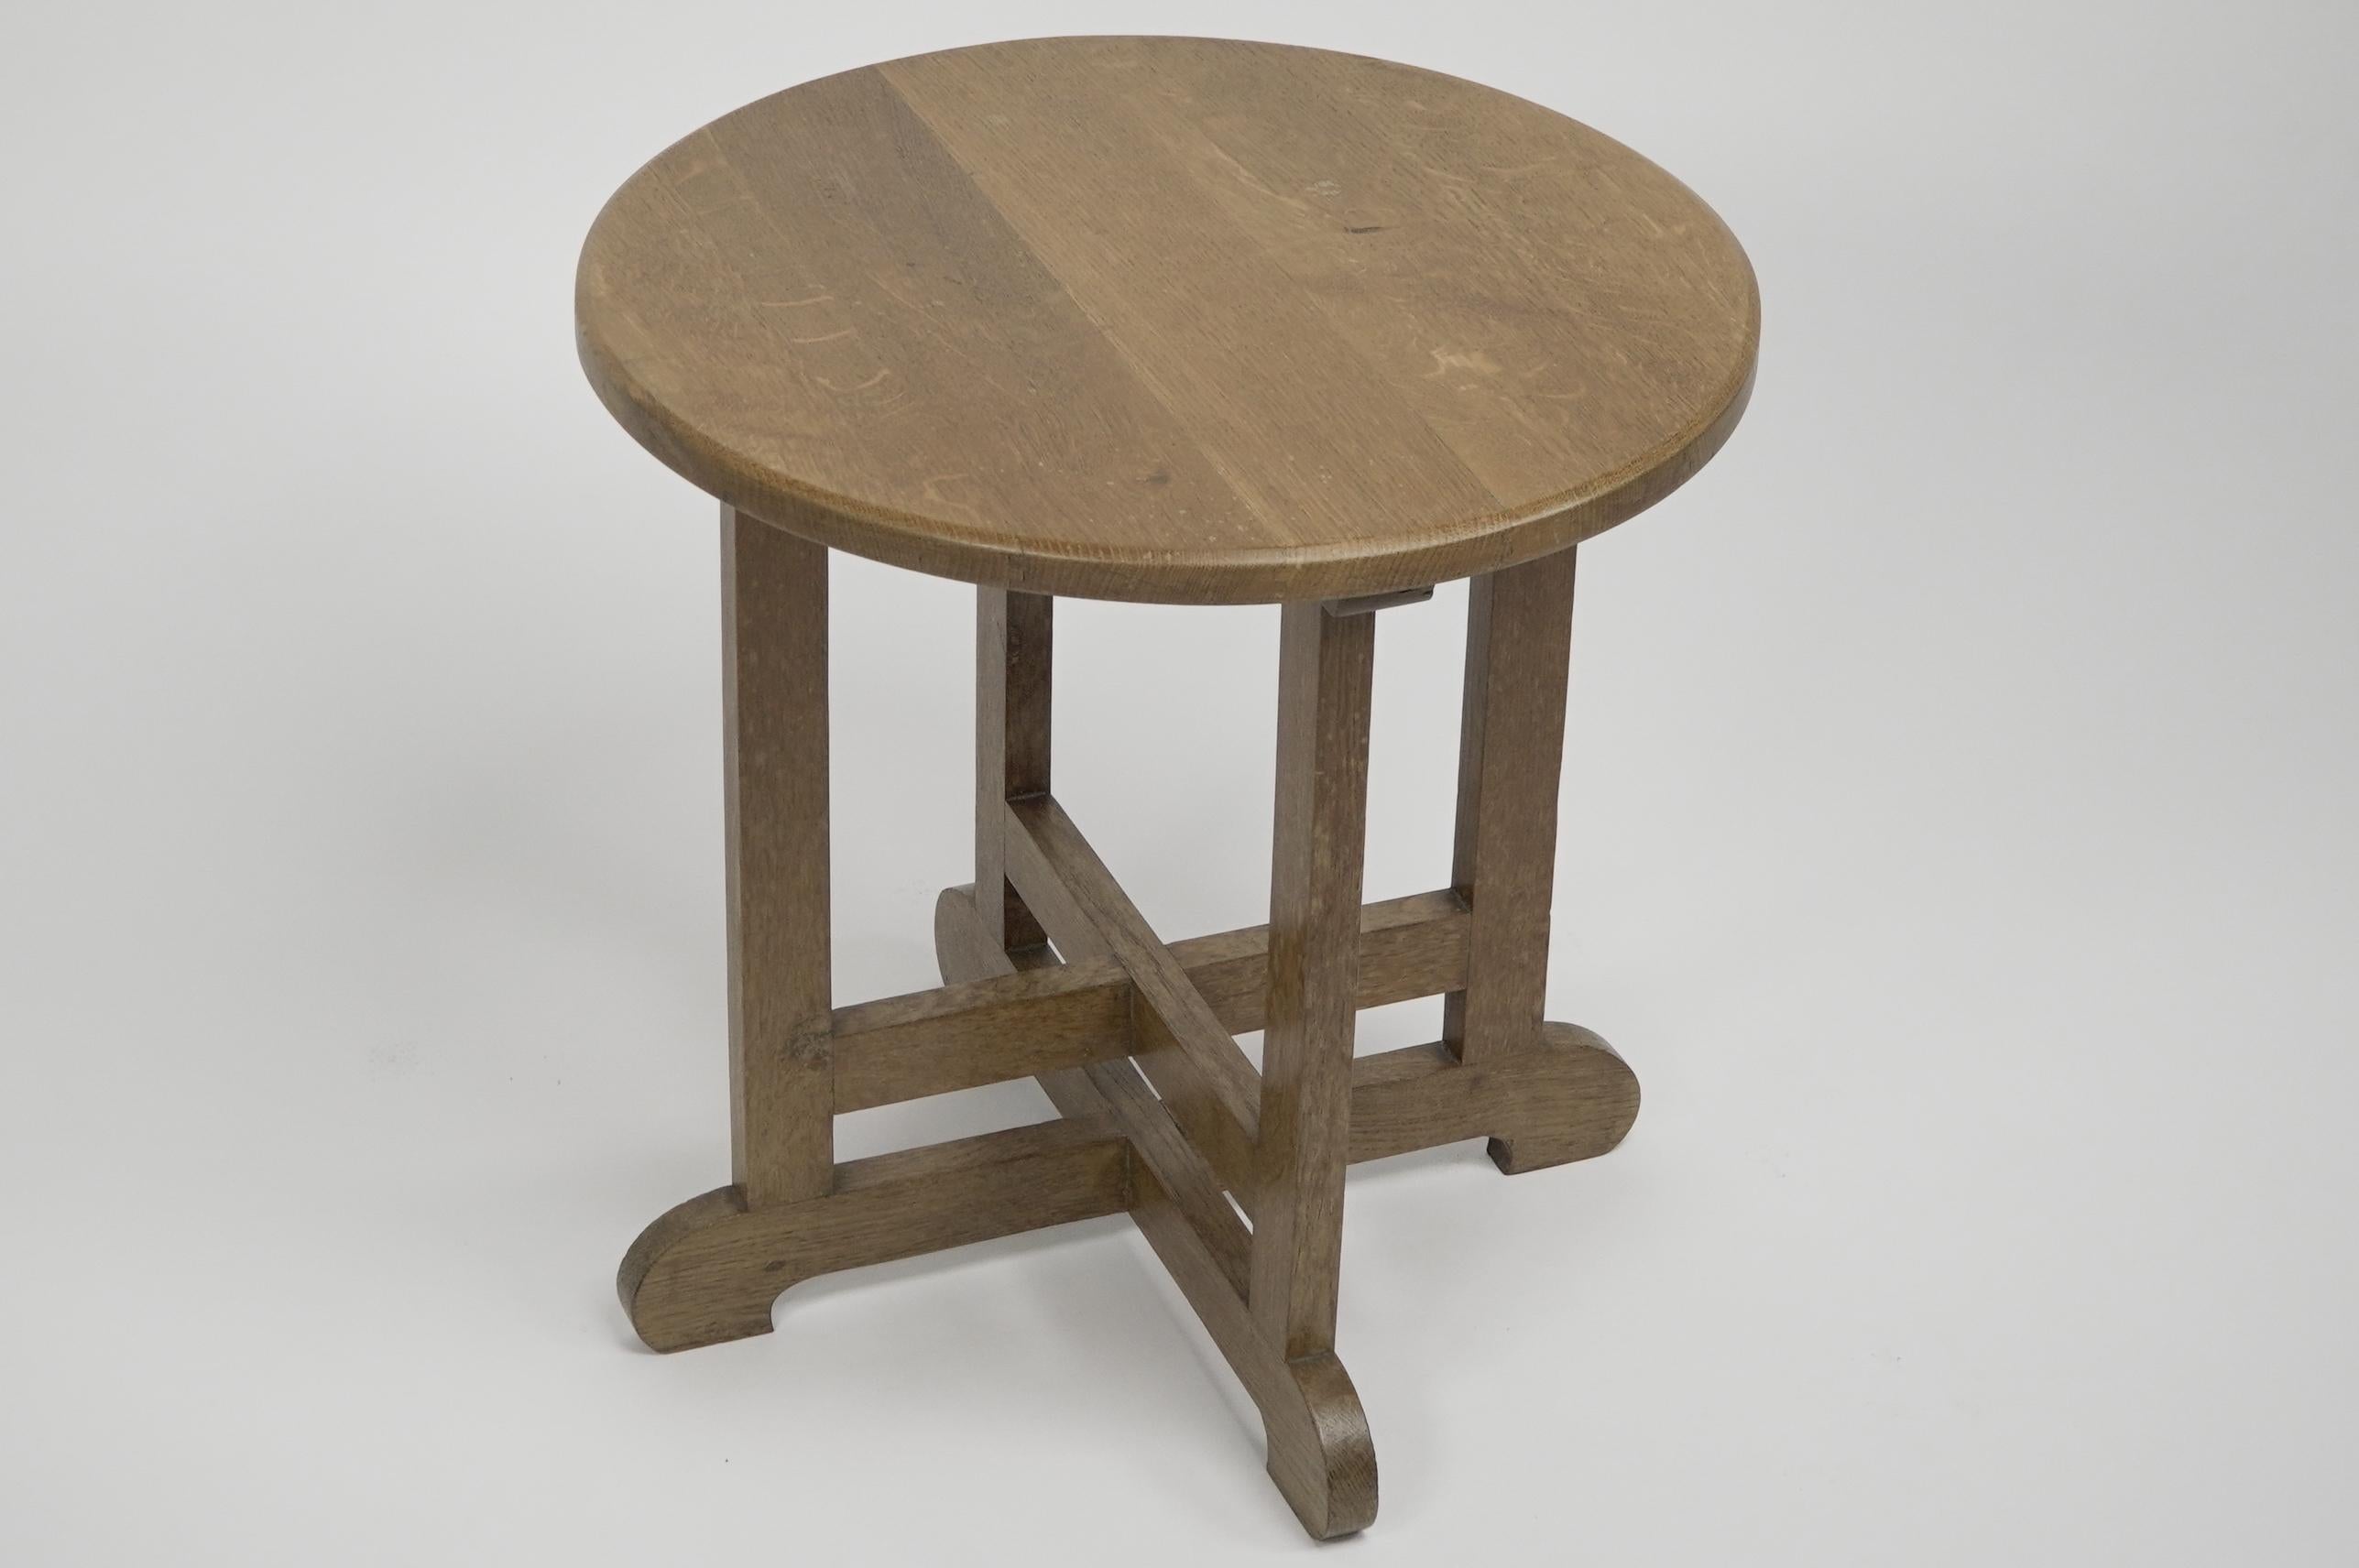 Chêne Heals of London dans le style de Table d'appoint ou d'appoint circulaire en Oak. en vente